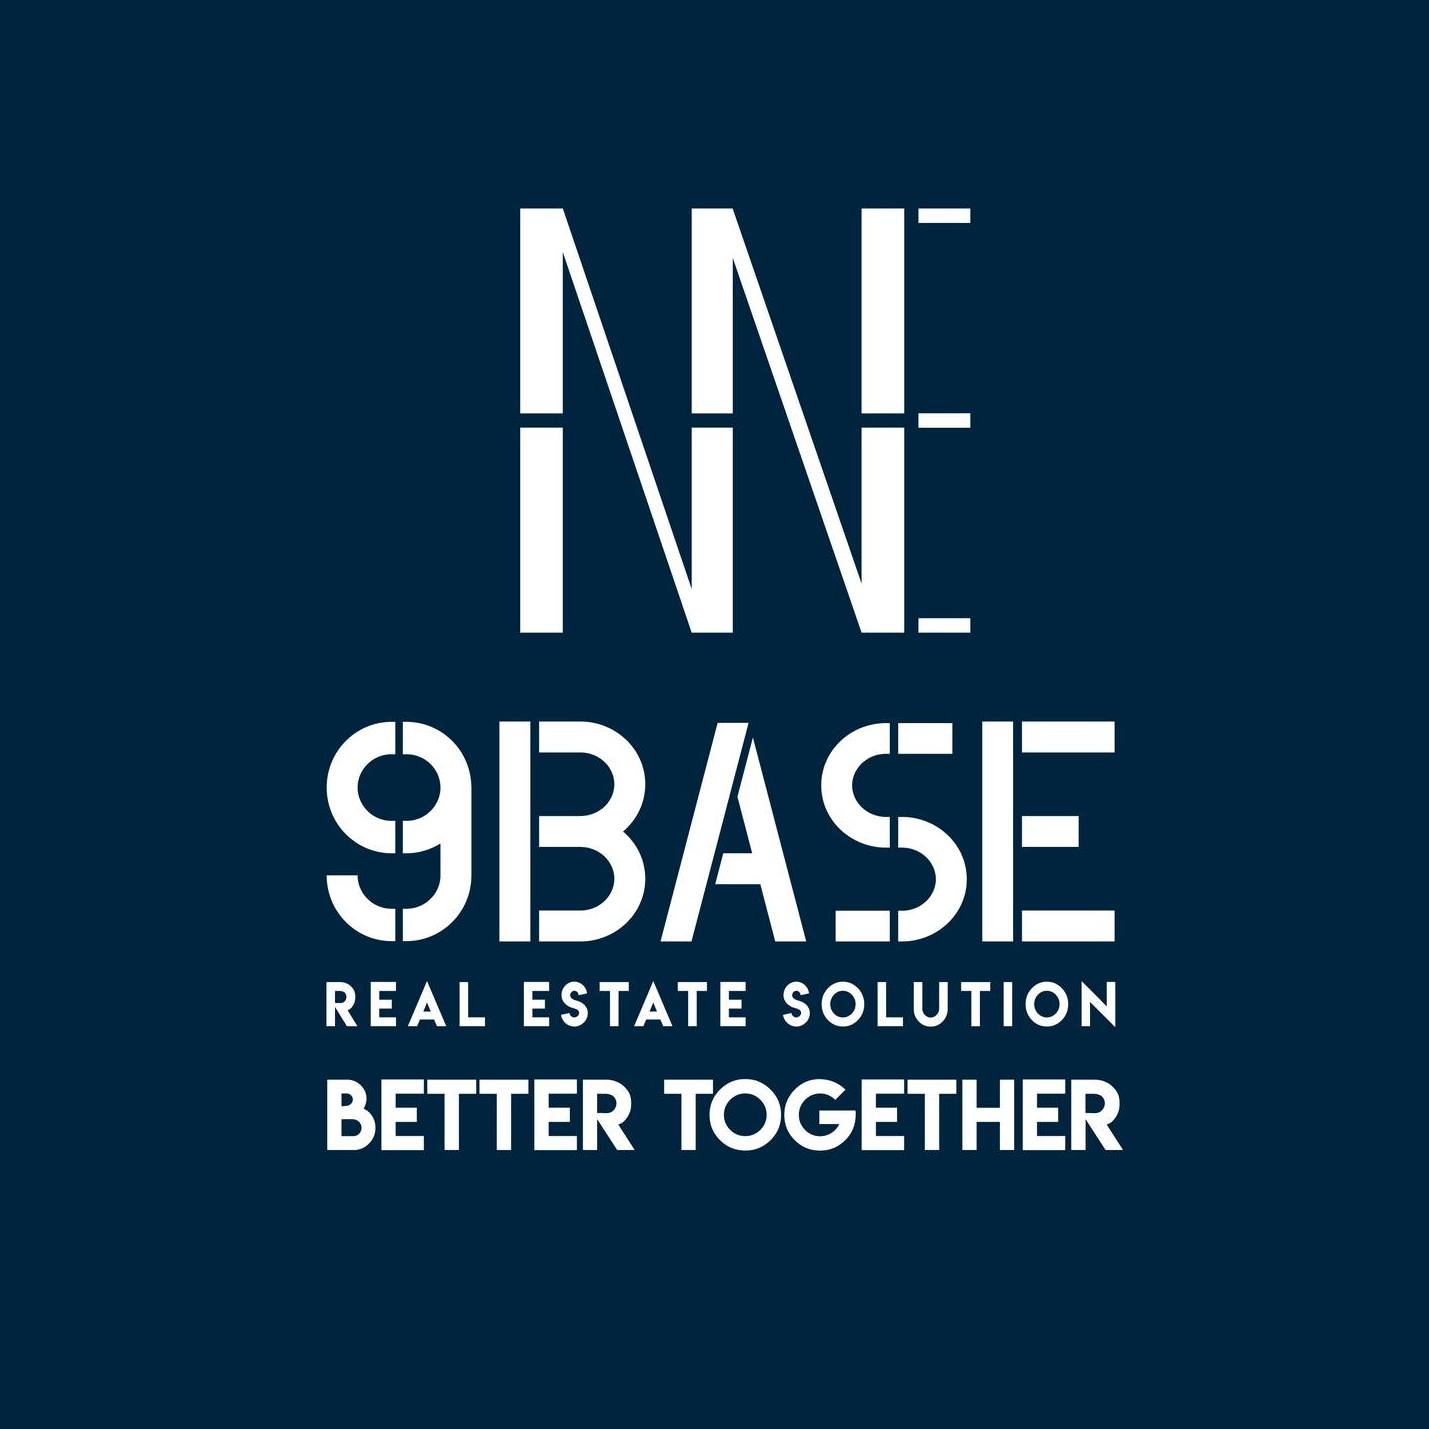 9BASE - REAL ESTATE SOLUTION